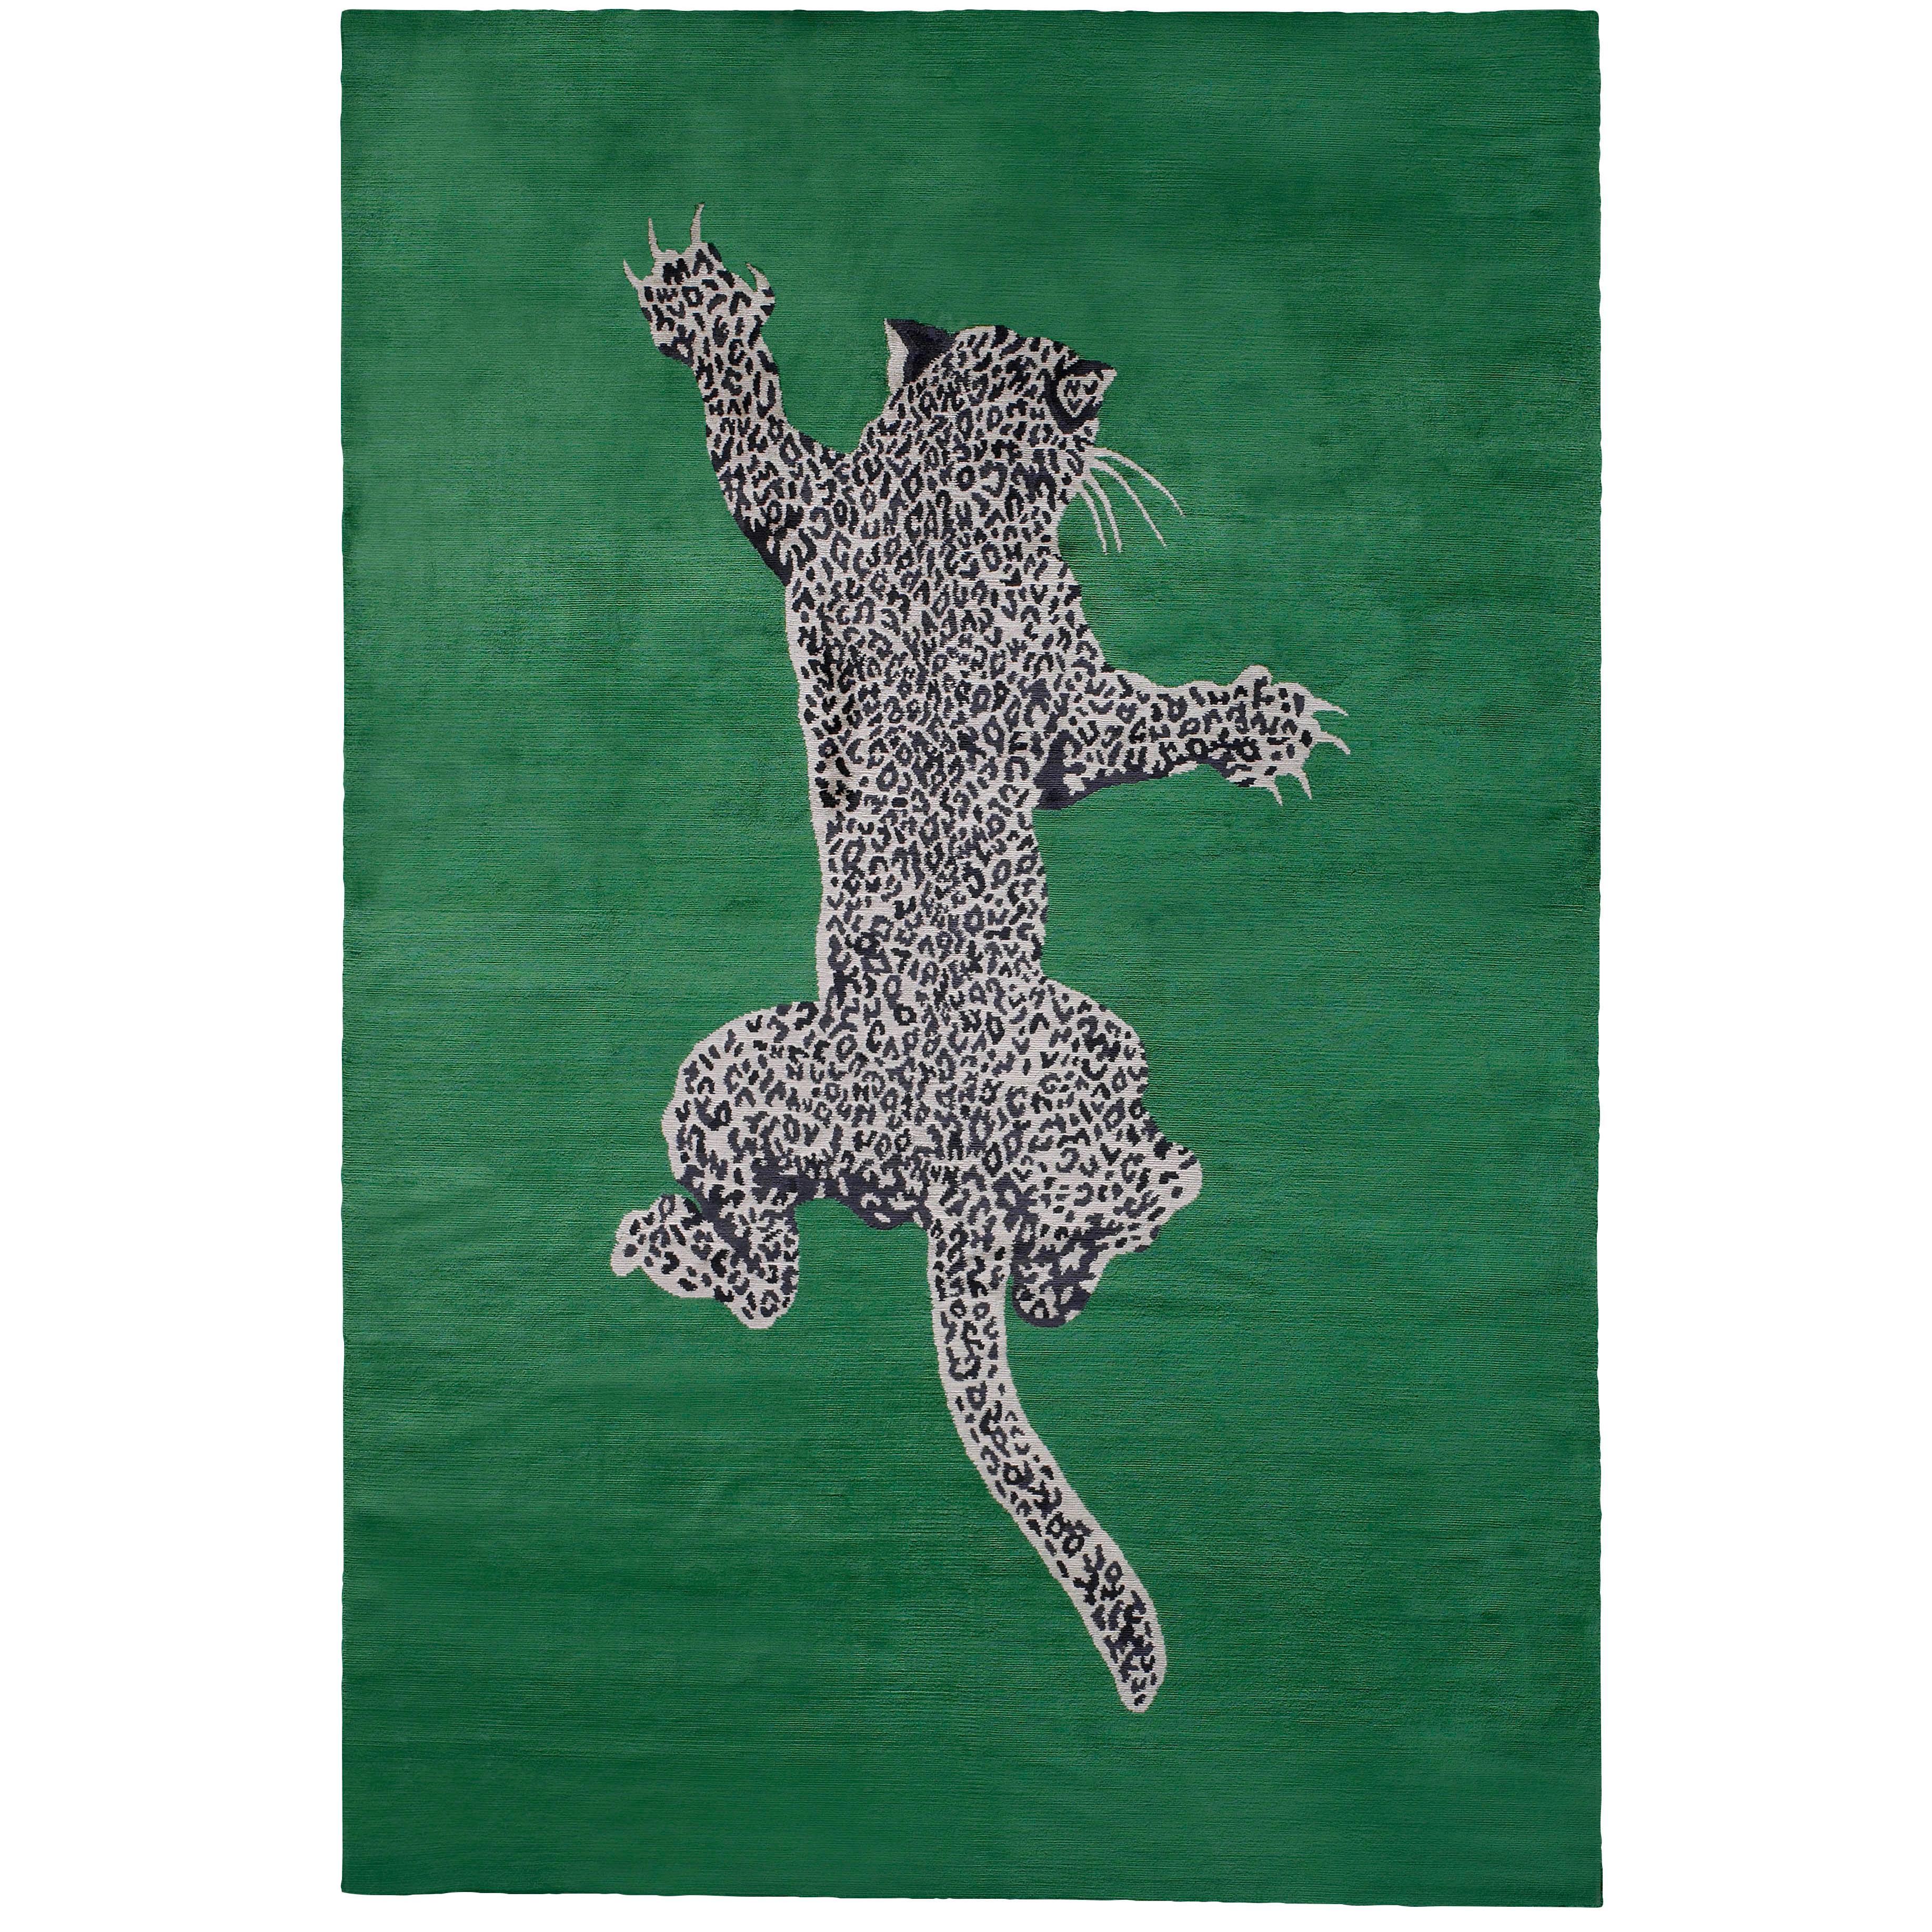 Climbing Leopard Hand-Knotted 10x8 Rug in Silk by Diane von Furstenberg